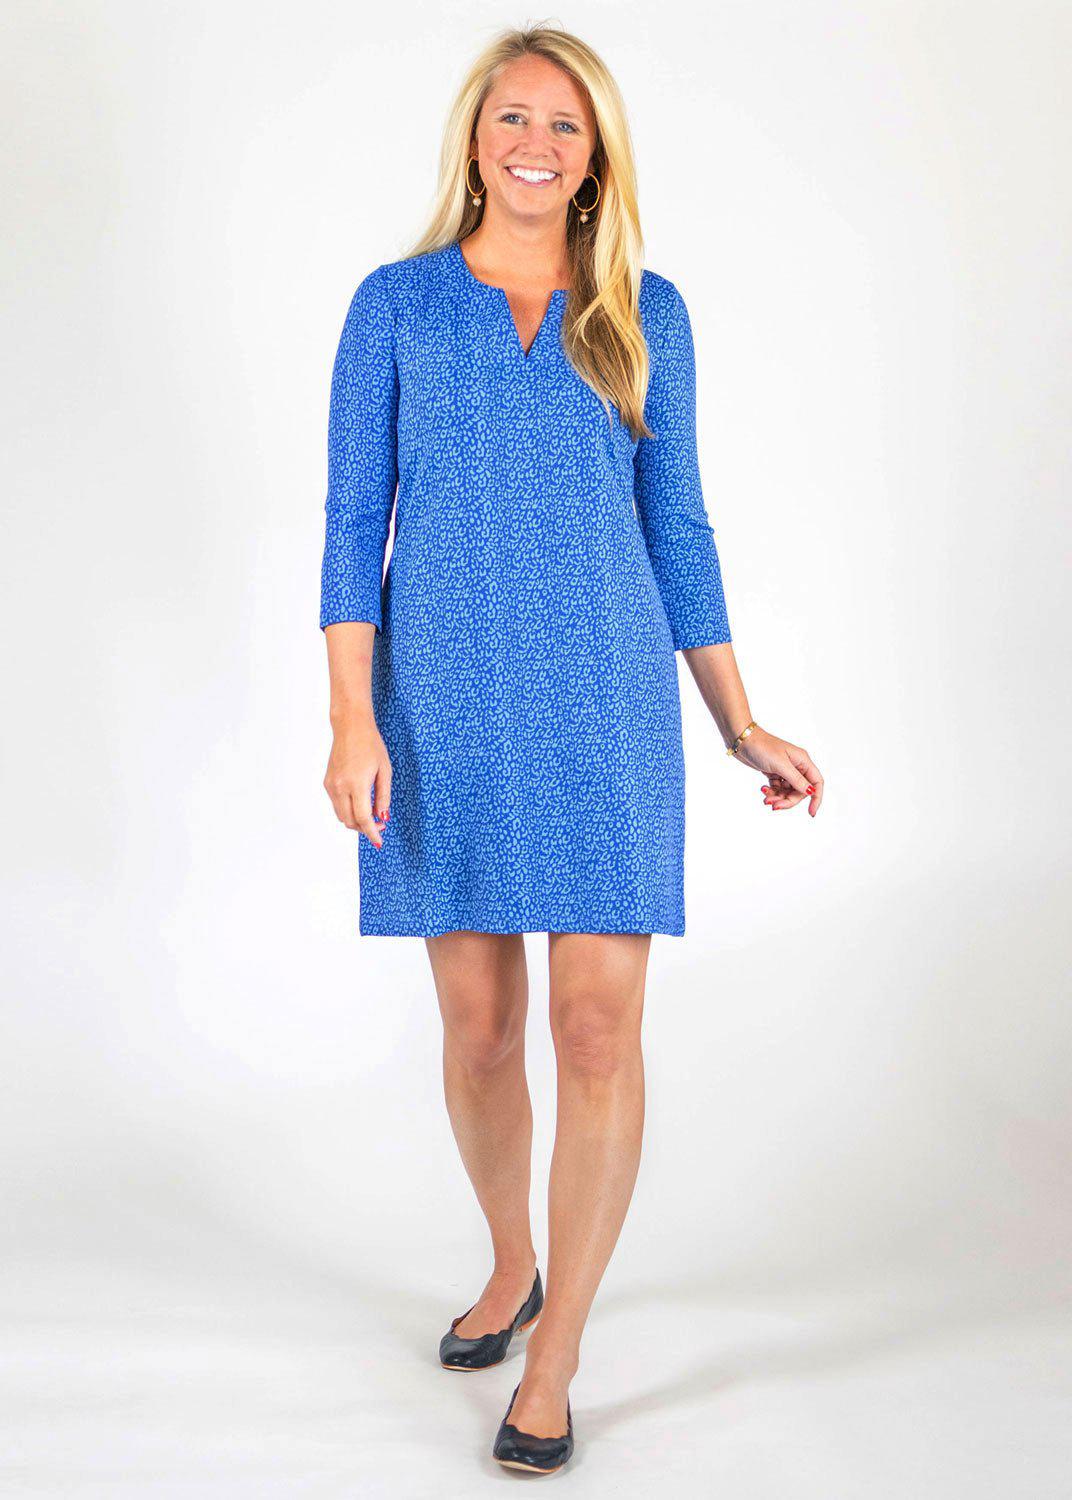 lucille-dress-3-4-sleeve-cheetah-blue-579108.jpg